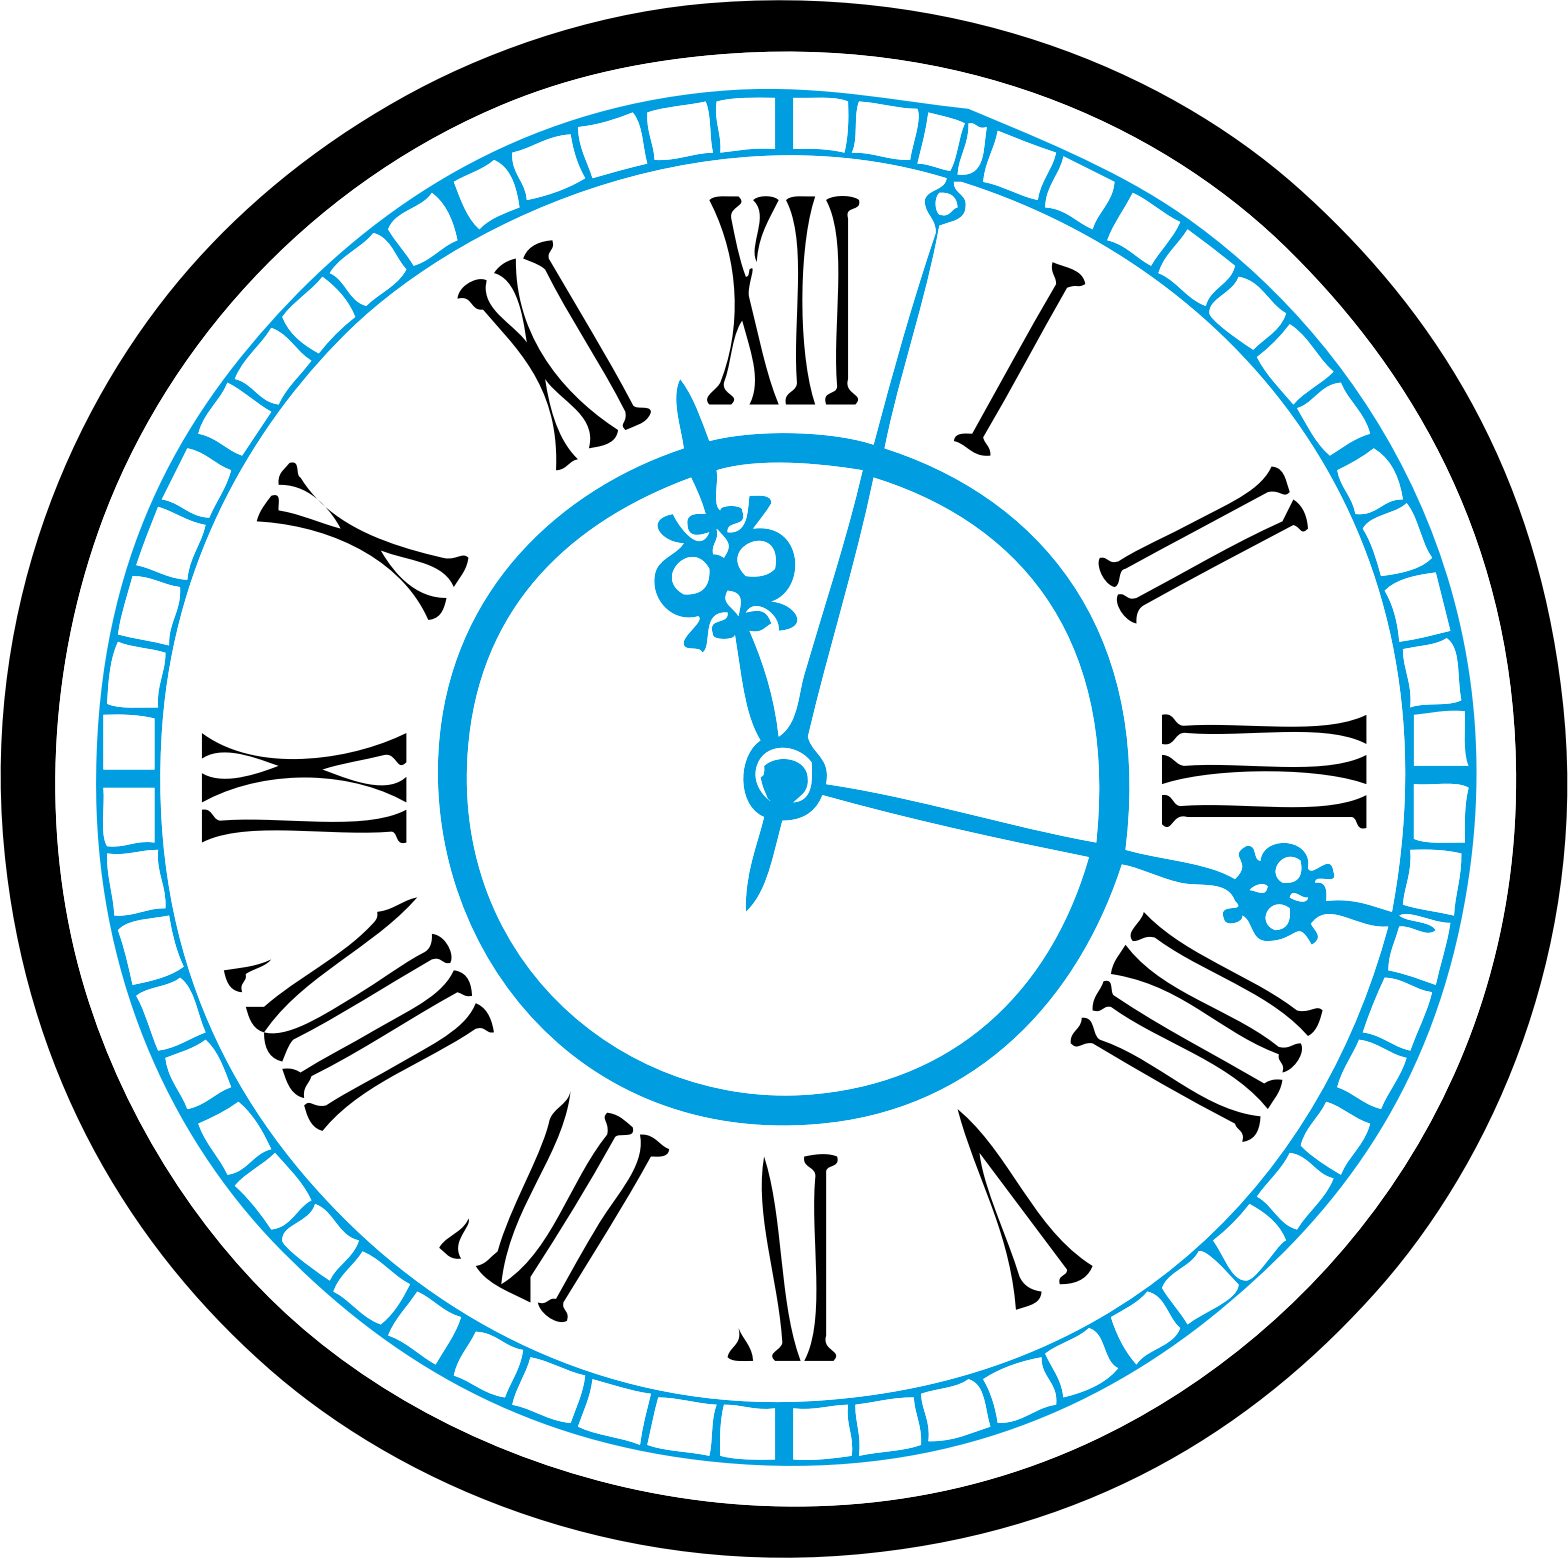 Клипарты часов на прозрачном фоне. Часы циферблат. Векторное изображение часов. Векторное изображение циферблата часов. Часы круглые вектор.